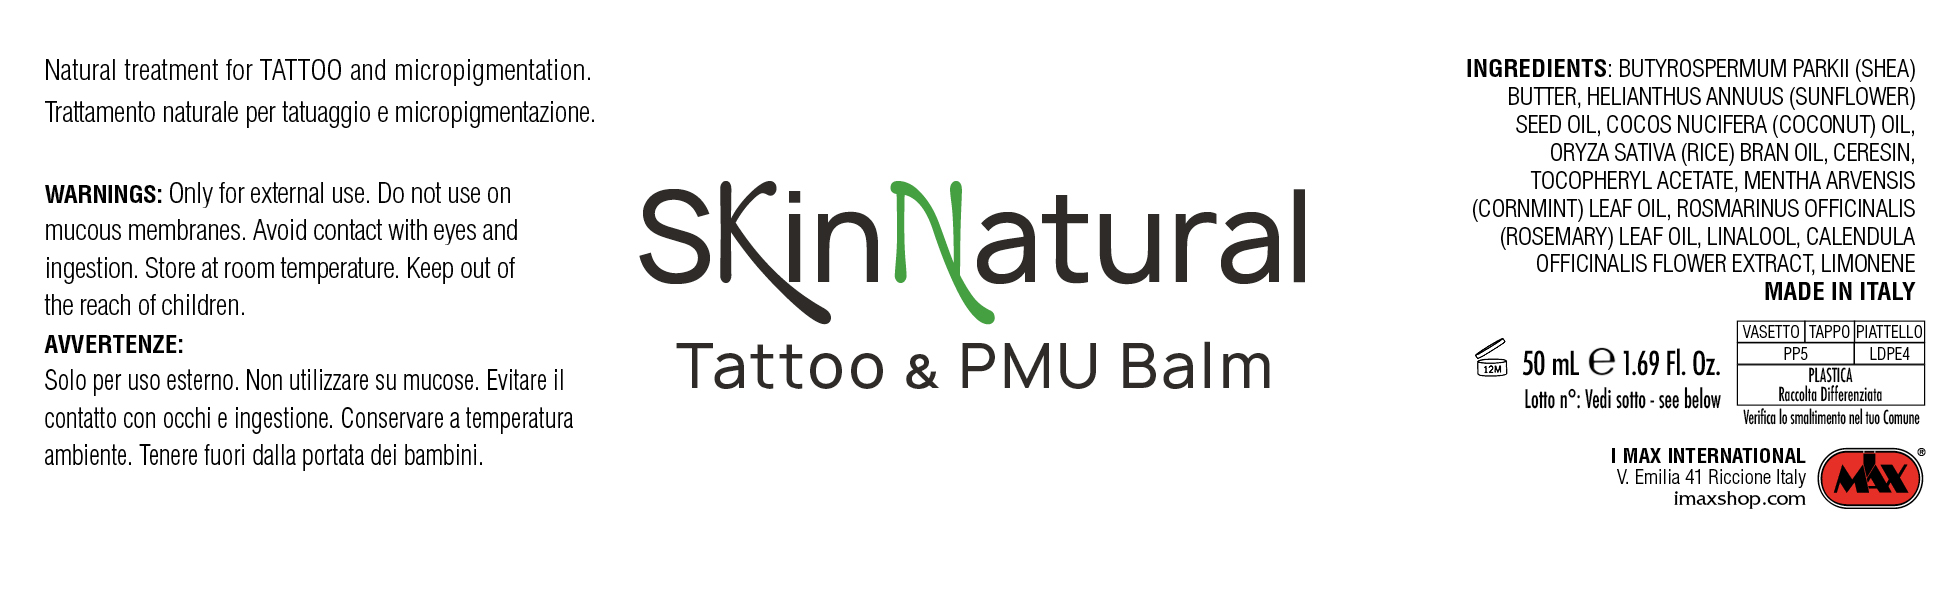 SkinNatural Product Label